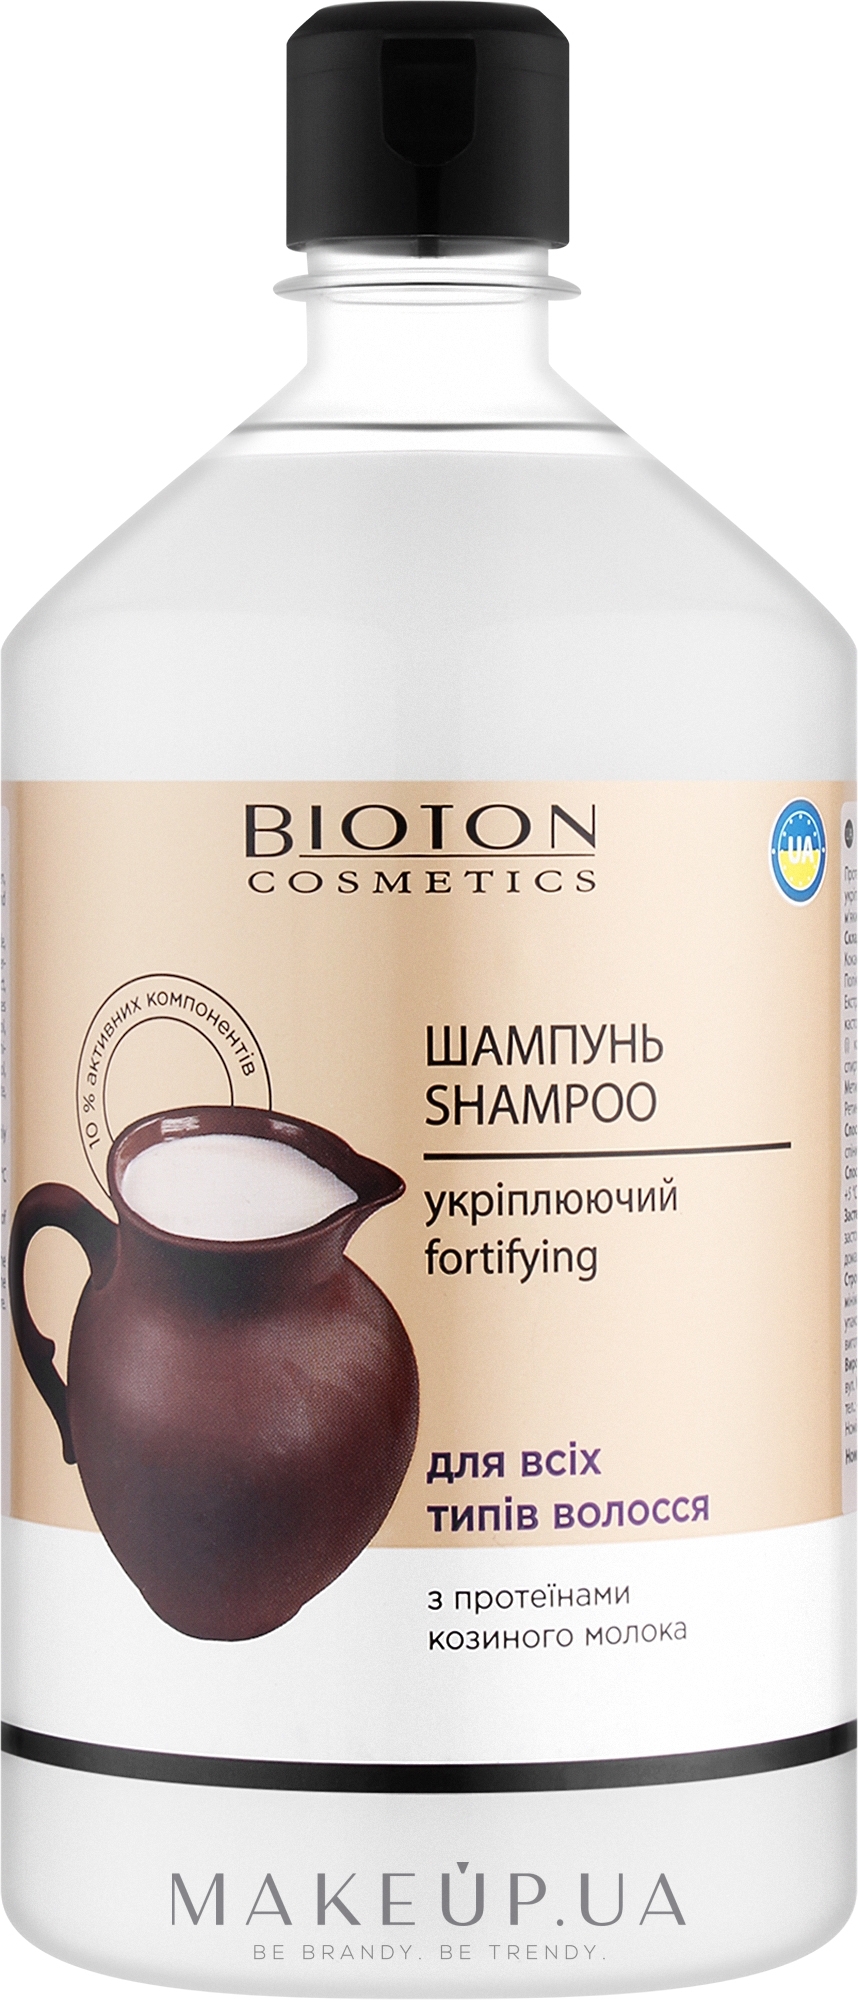 Шампунь для всіх типів волосся з протеїнами козиного молока - Bioton Cosmetics — фото 1000ml